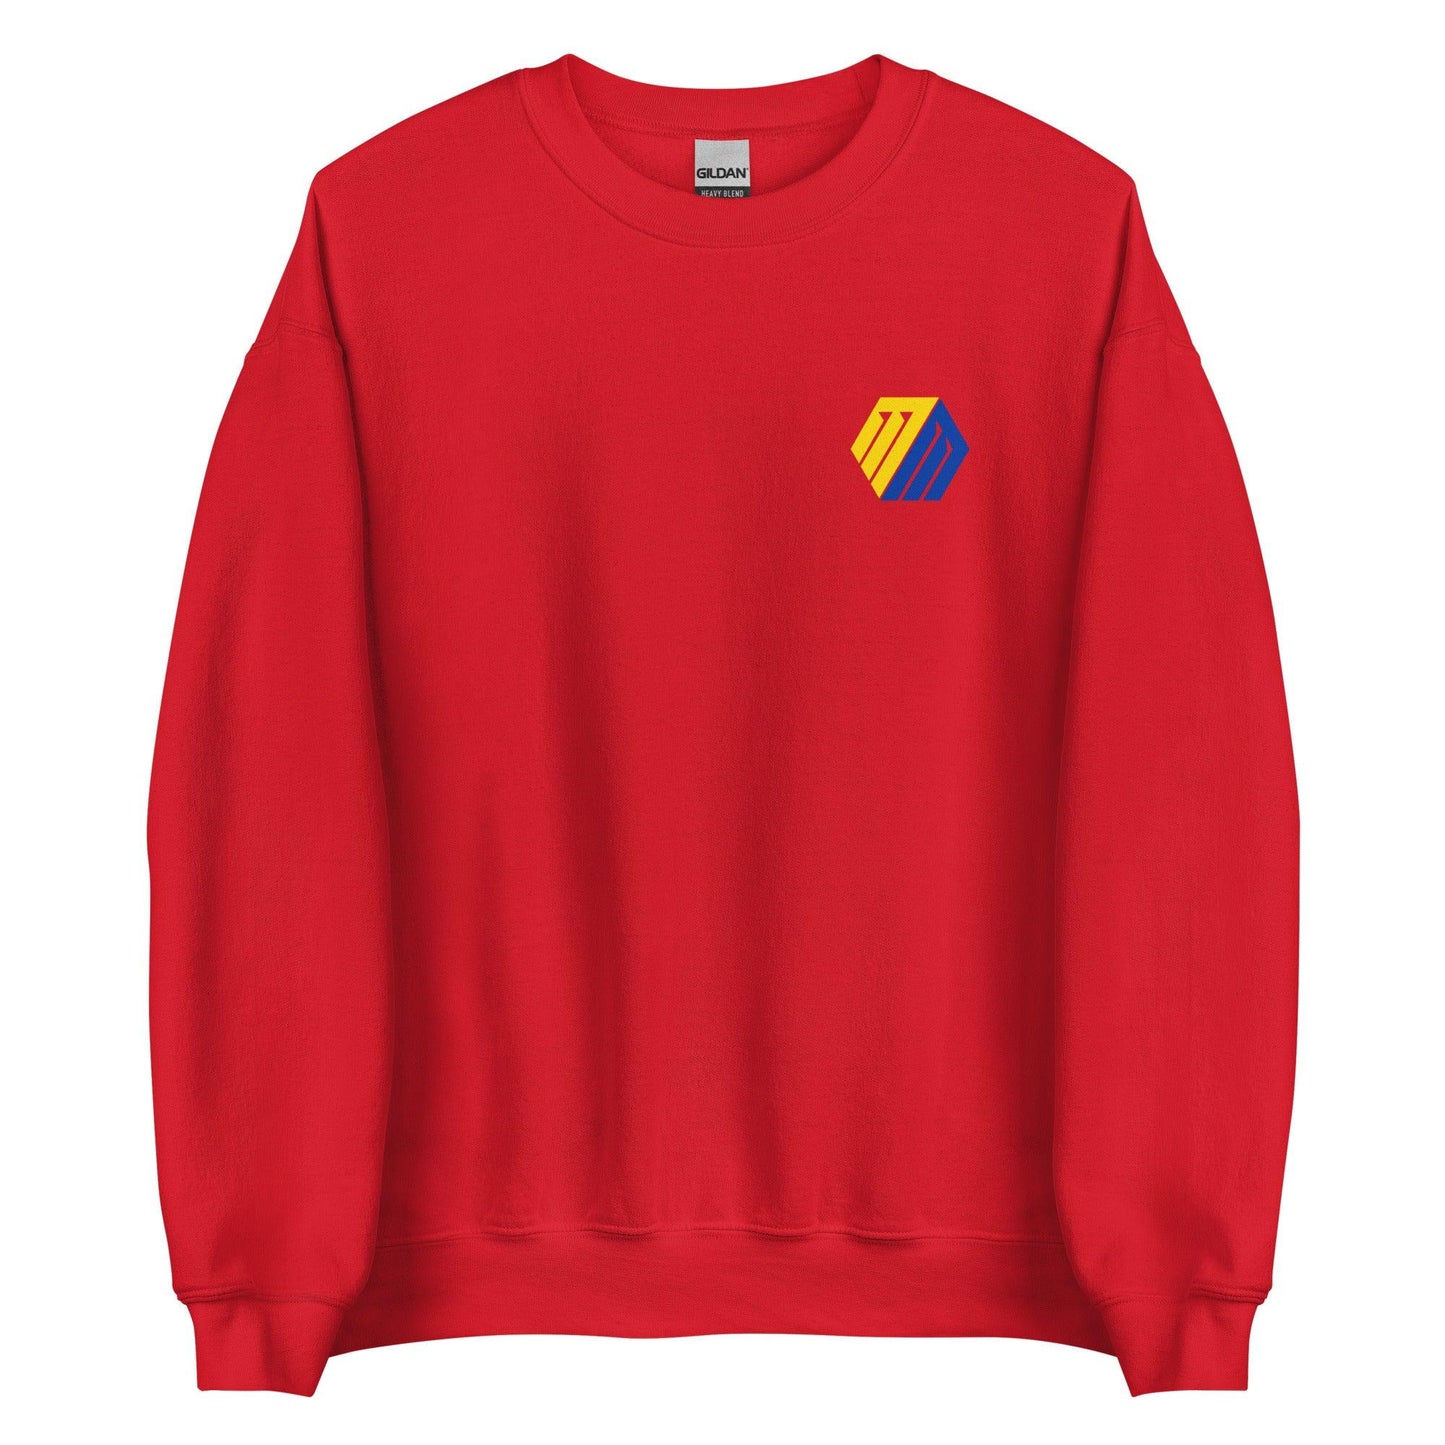 Matthew Mors "Essential" Sweatshirt - Fan Arch